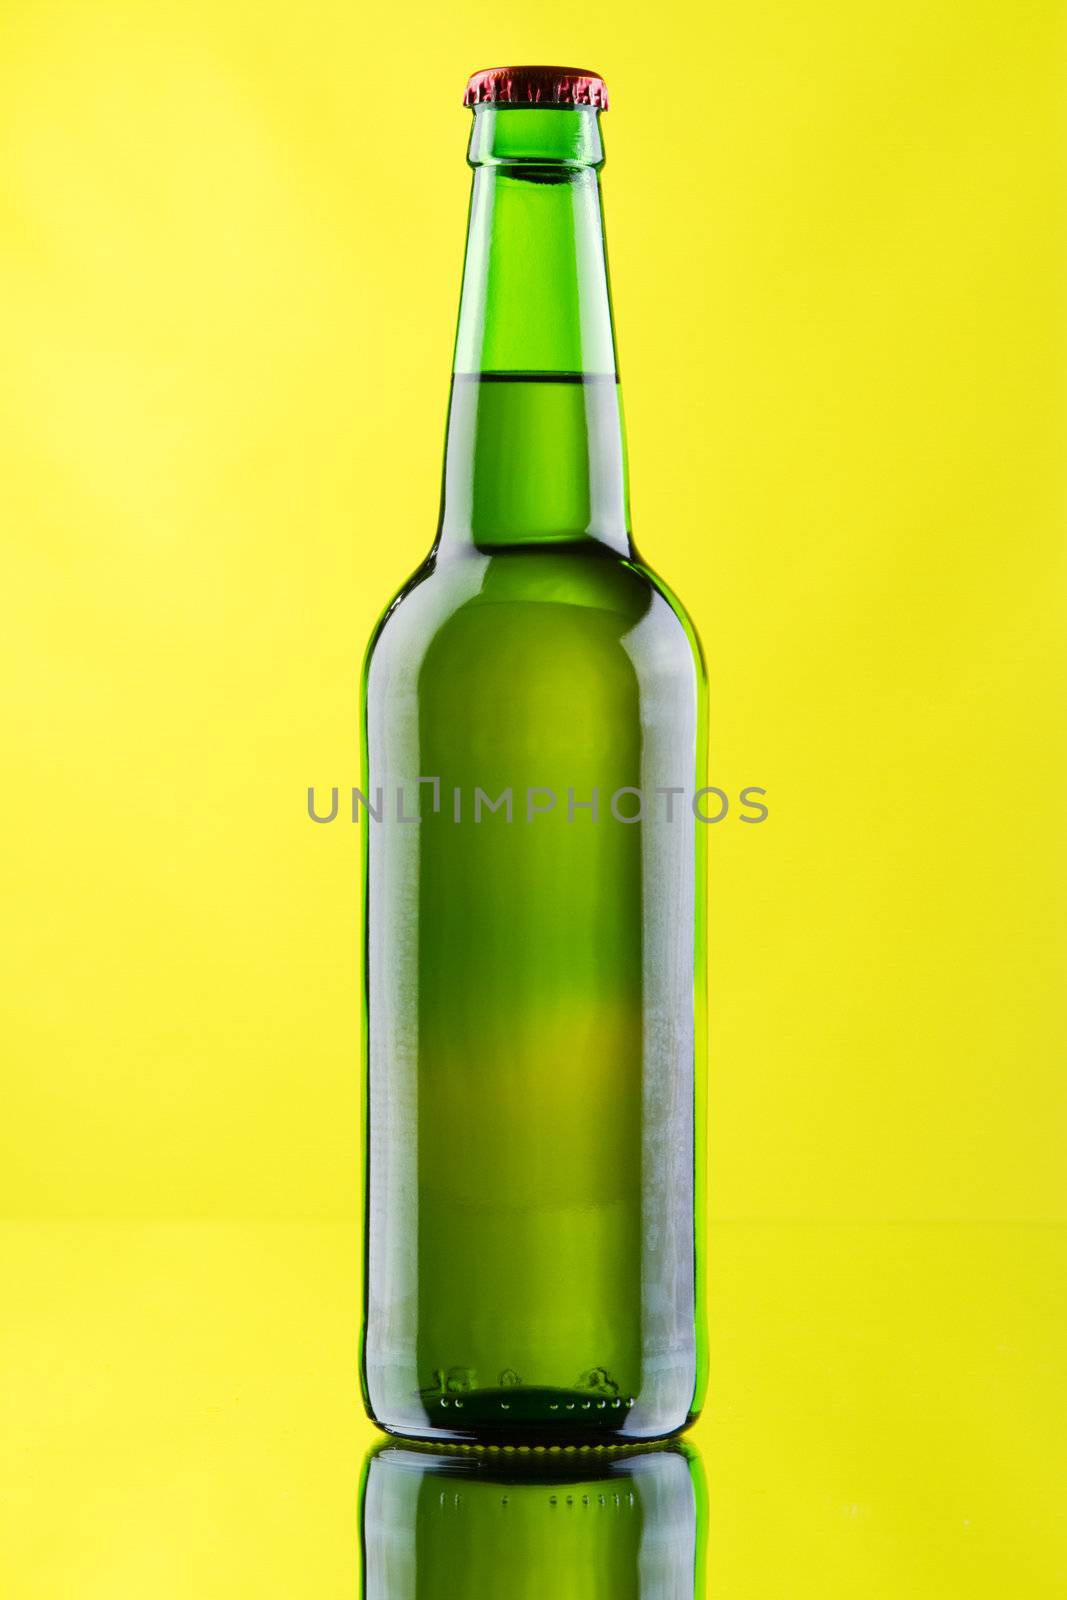 Beer mug and bottle on yellow background by Gdolgikh